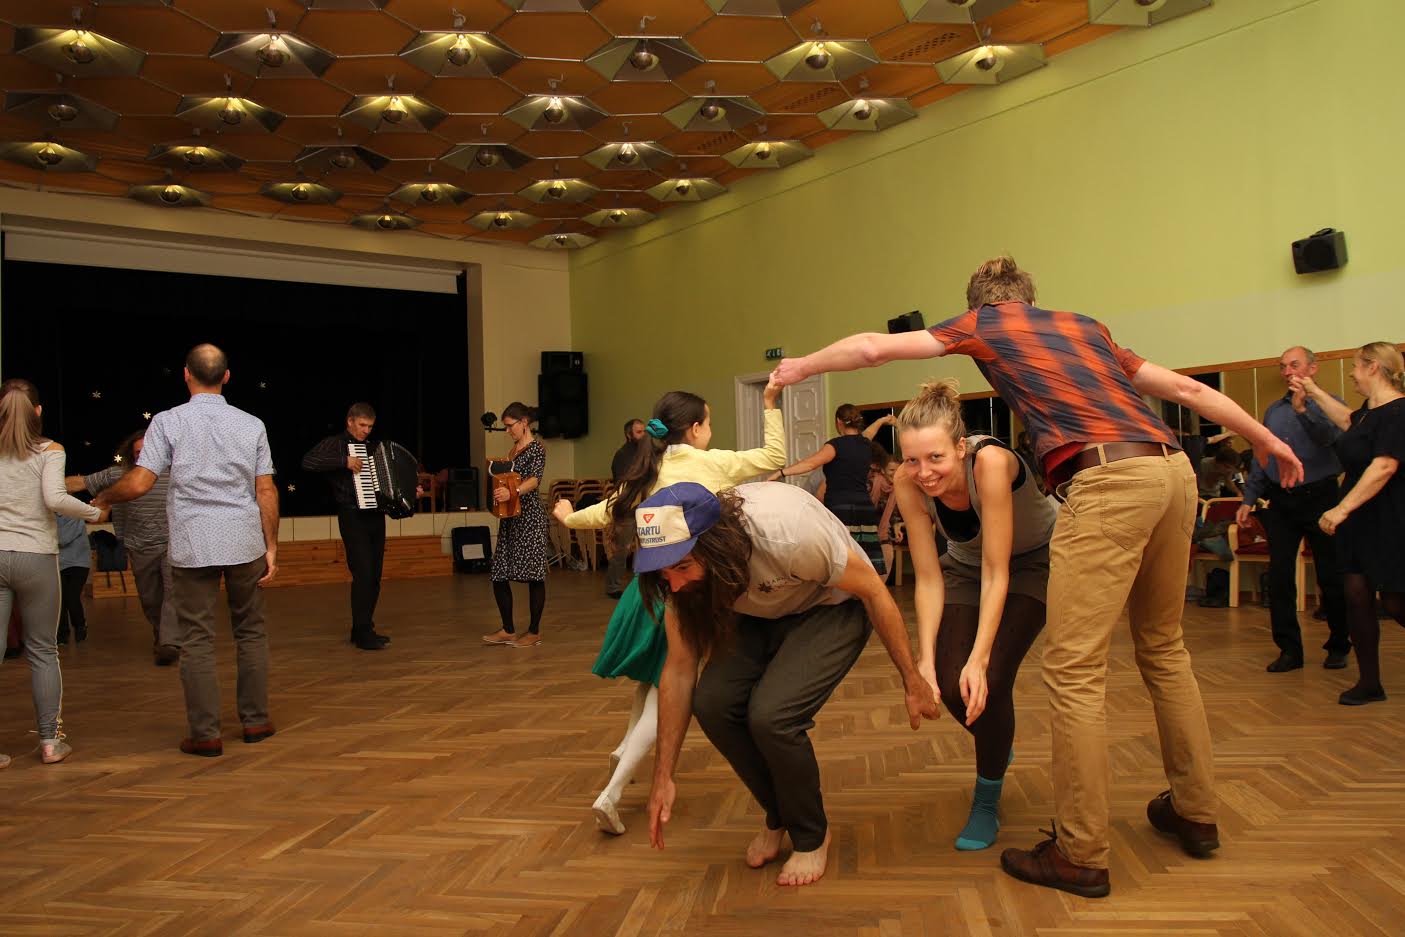 Vastseliina tantsuklubis käivad tantsimas nii suuremad kui ka väiksemad. Tantsudele taustaks musitseerisid Veiko Kivi ja tantsude õpetaja Kadri Lepasson. Foto: BIRGIT PETTAI